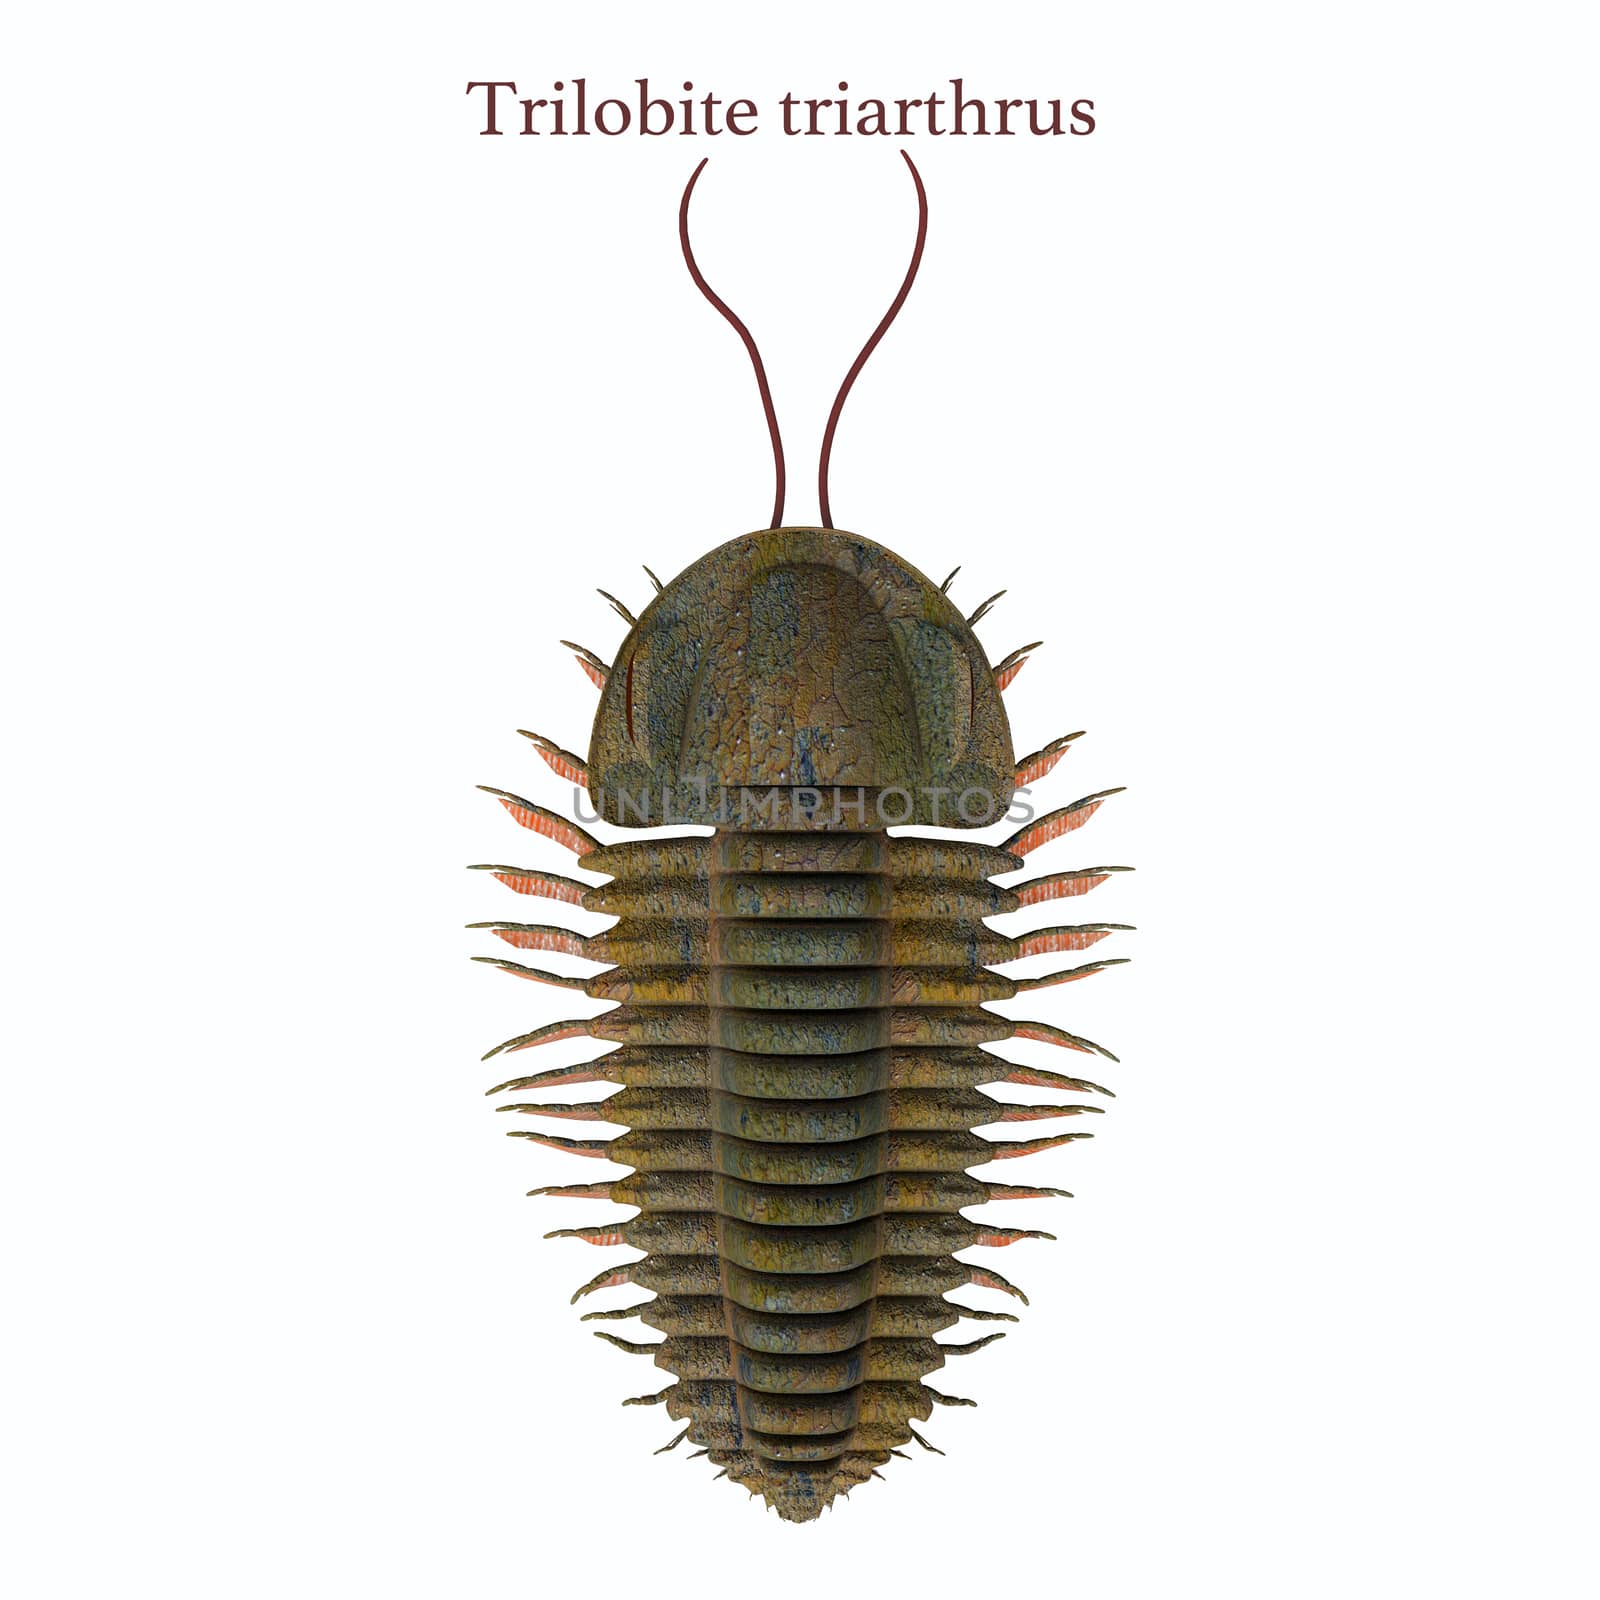 Trilobite triarthrus and Font by Catmando